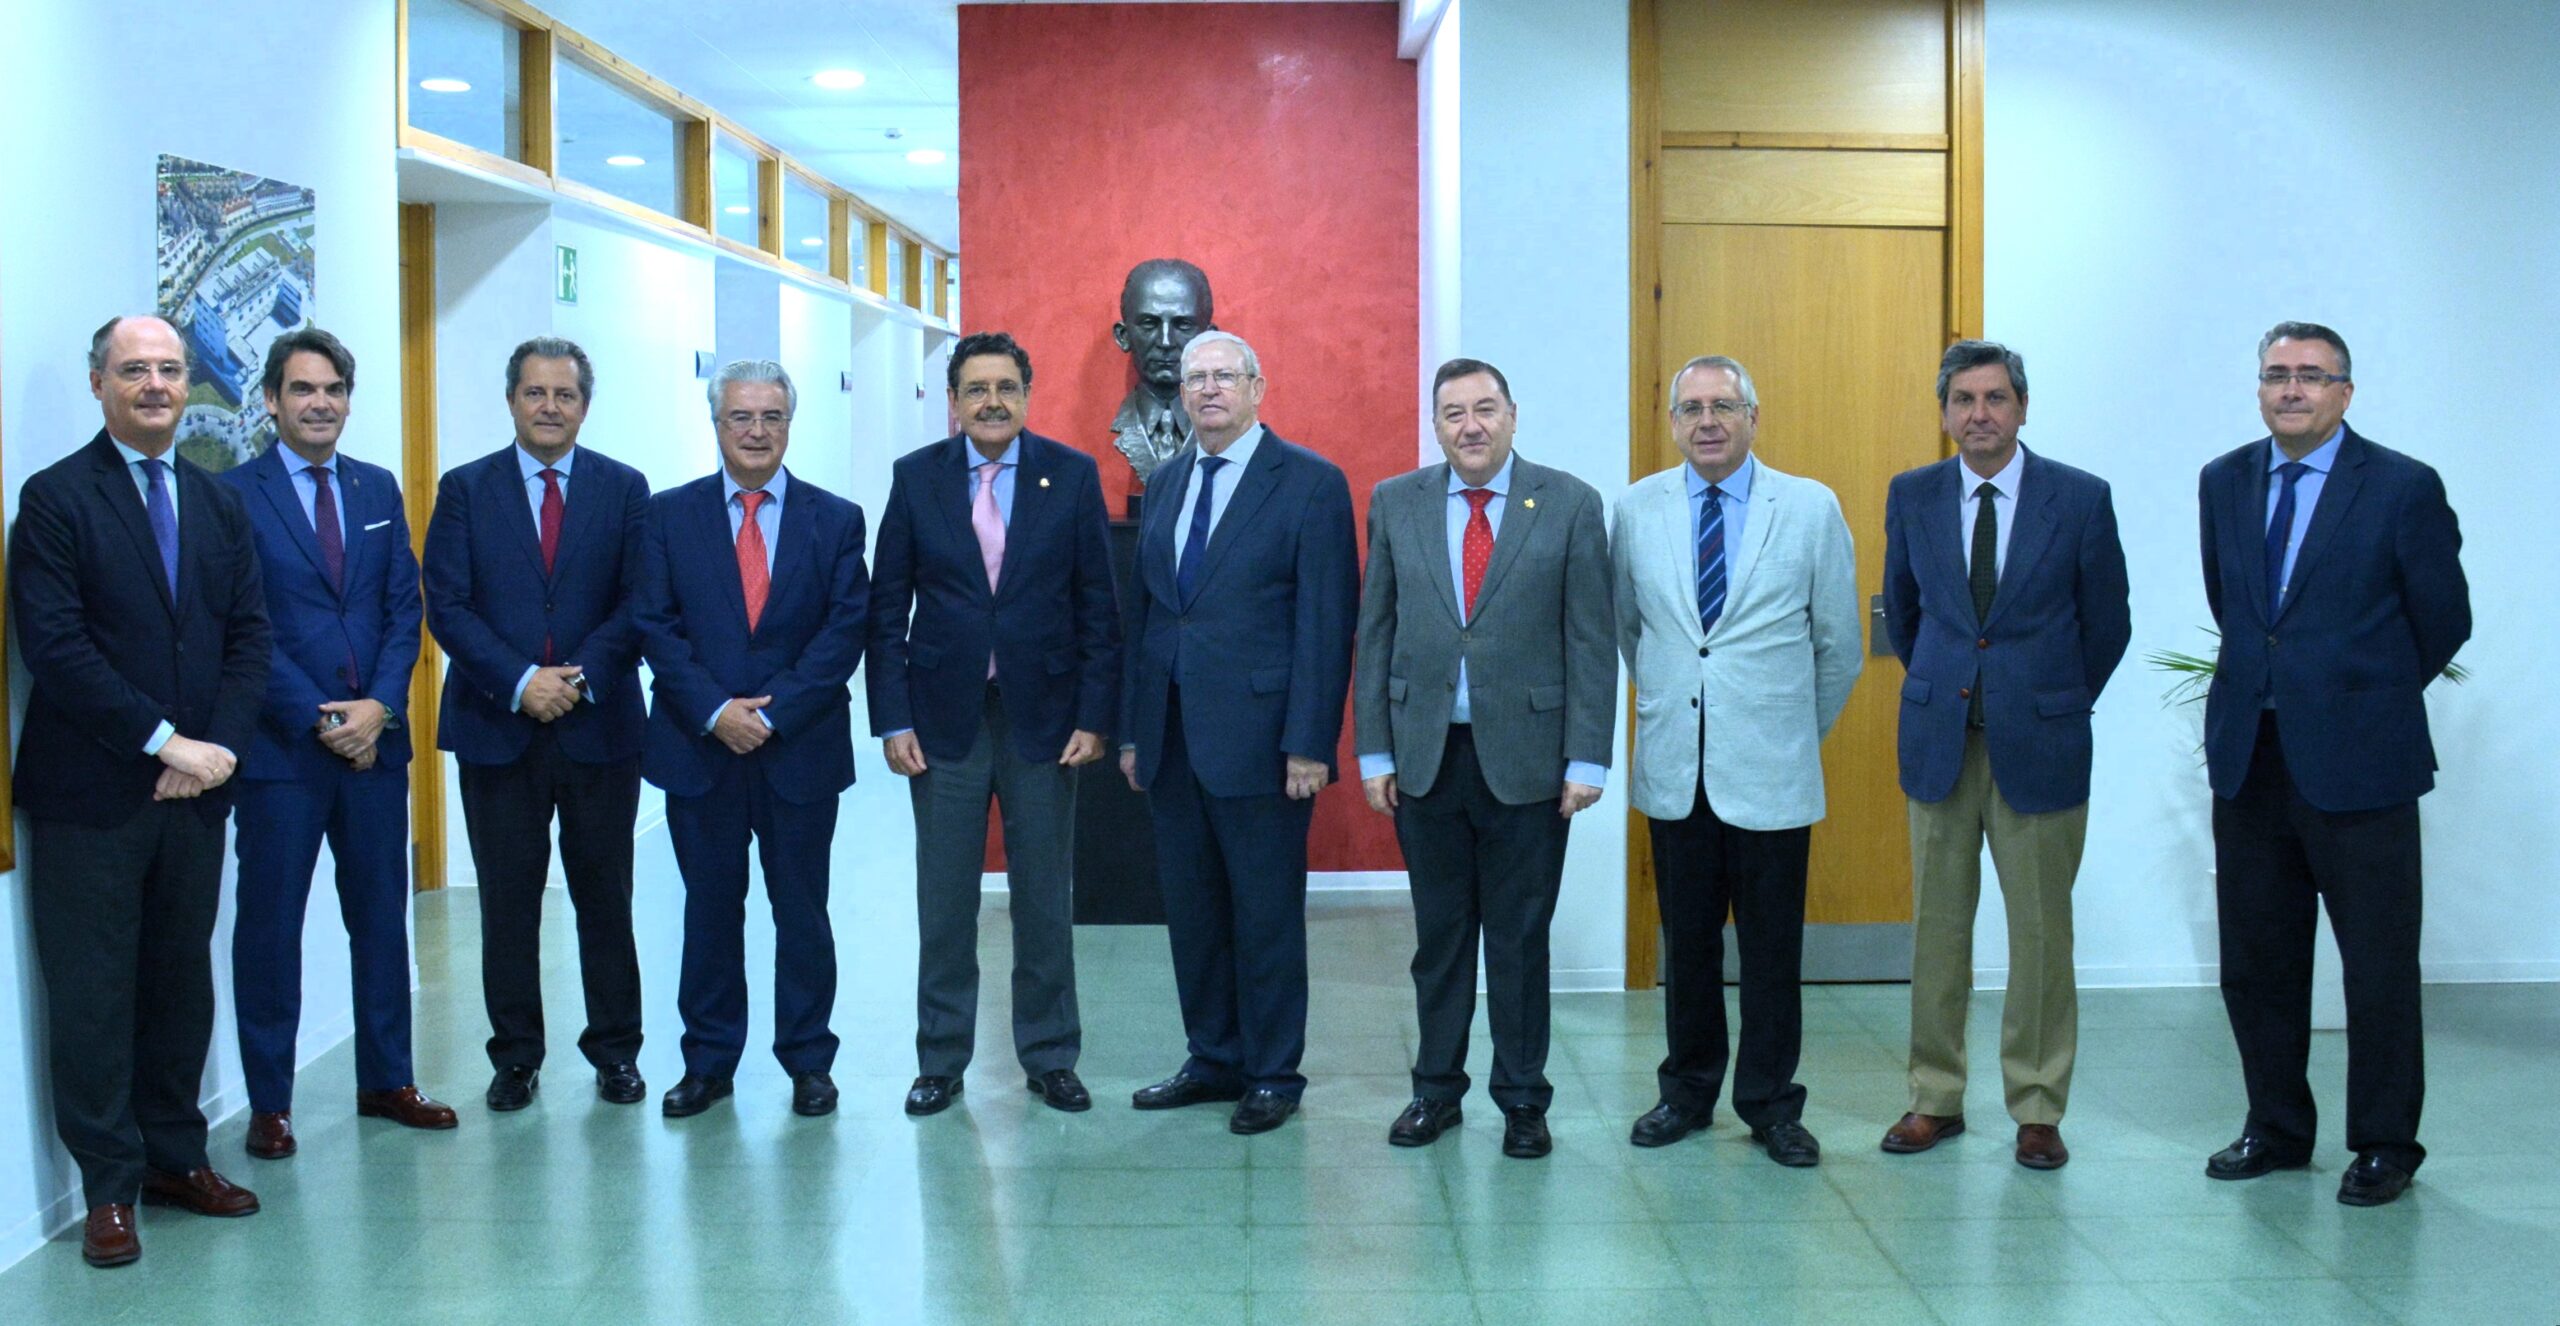 Reunión entre los directivos de la Universidad CEU Fernando III y el Consejo General de Hermandades y Cofradías de Sevilla